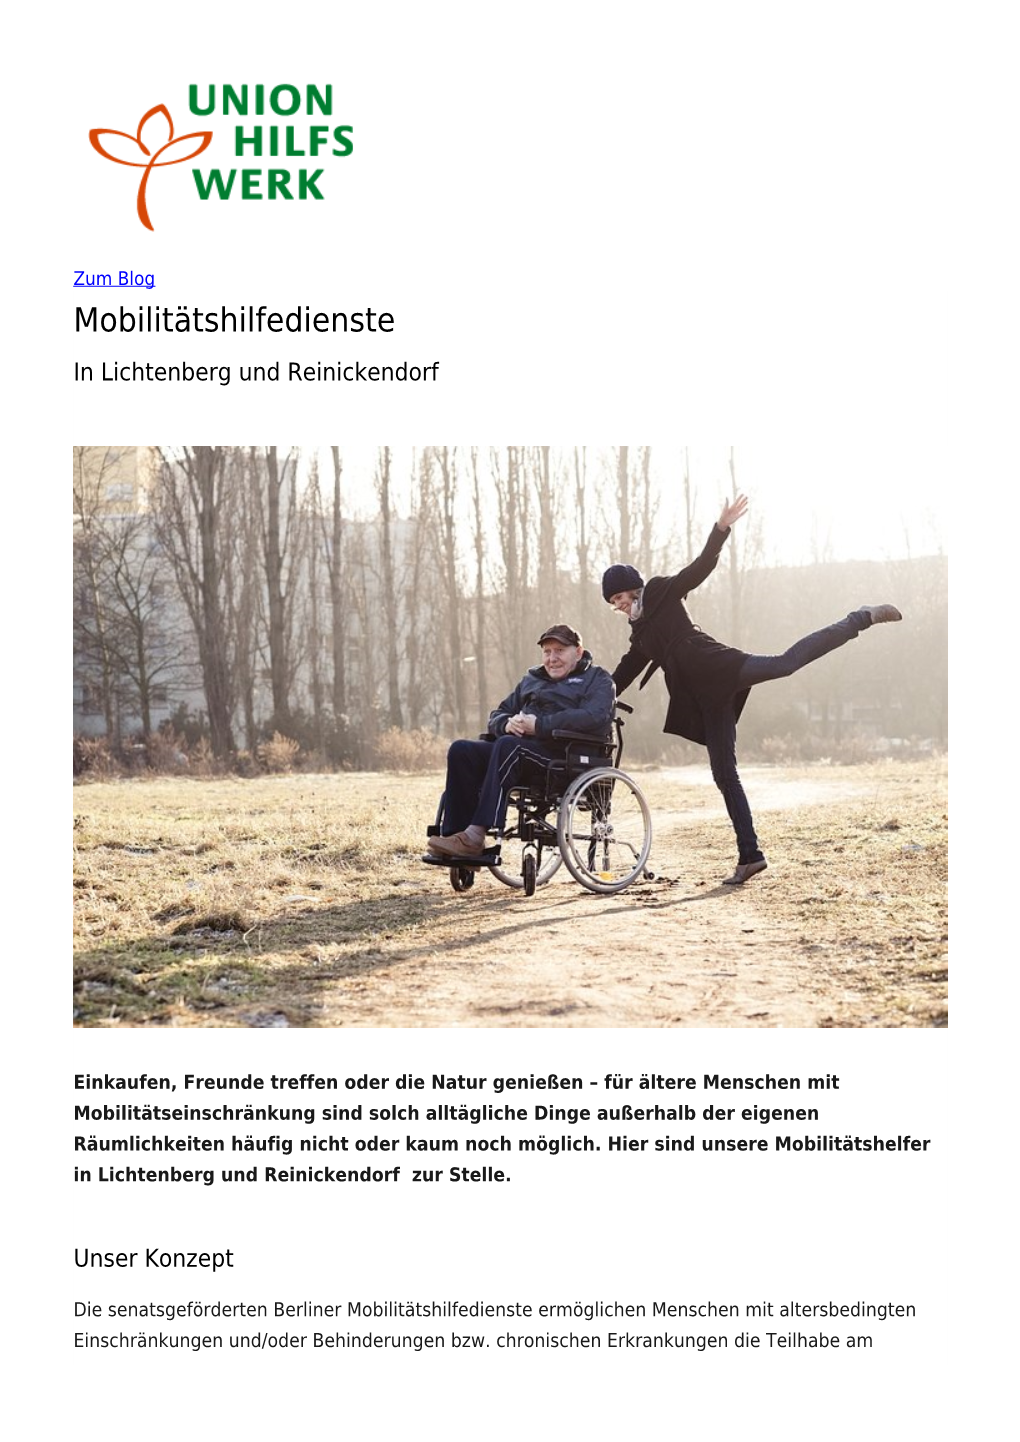 Mobilitätshilfedienste in Lichtenberg Und Reinickendorf